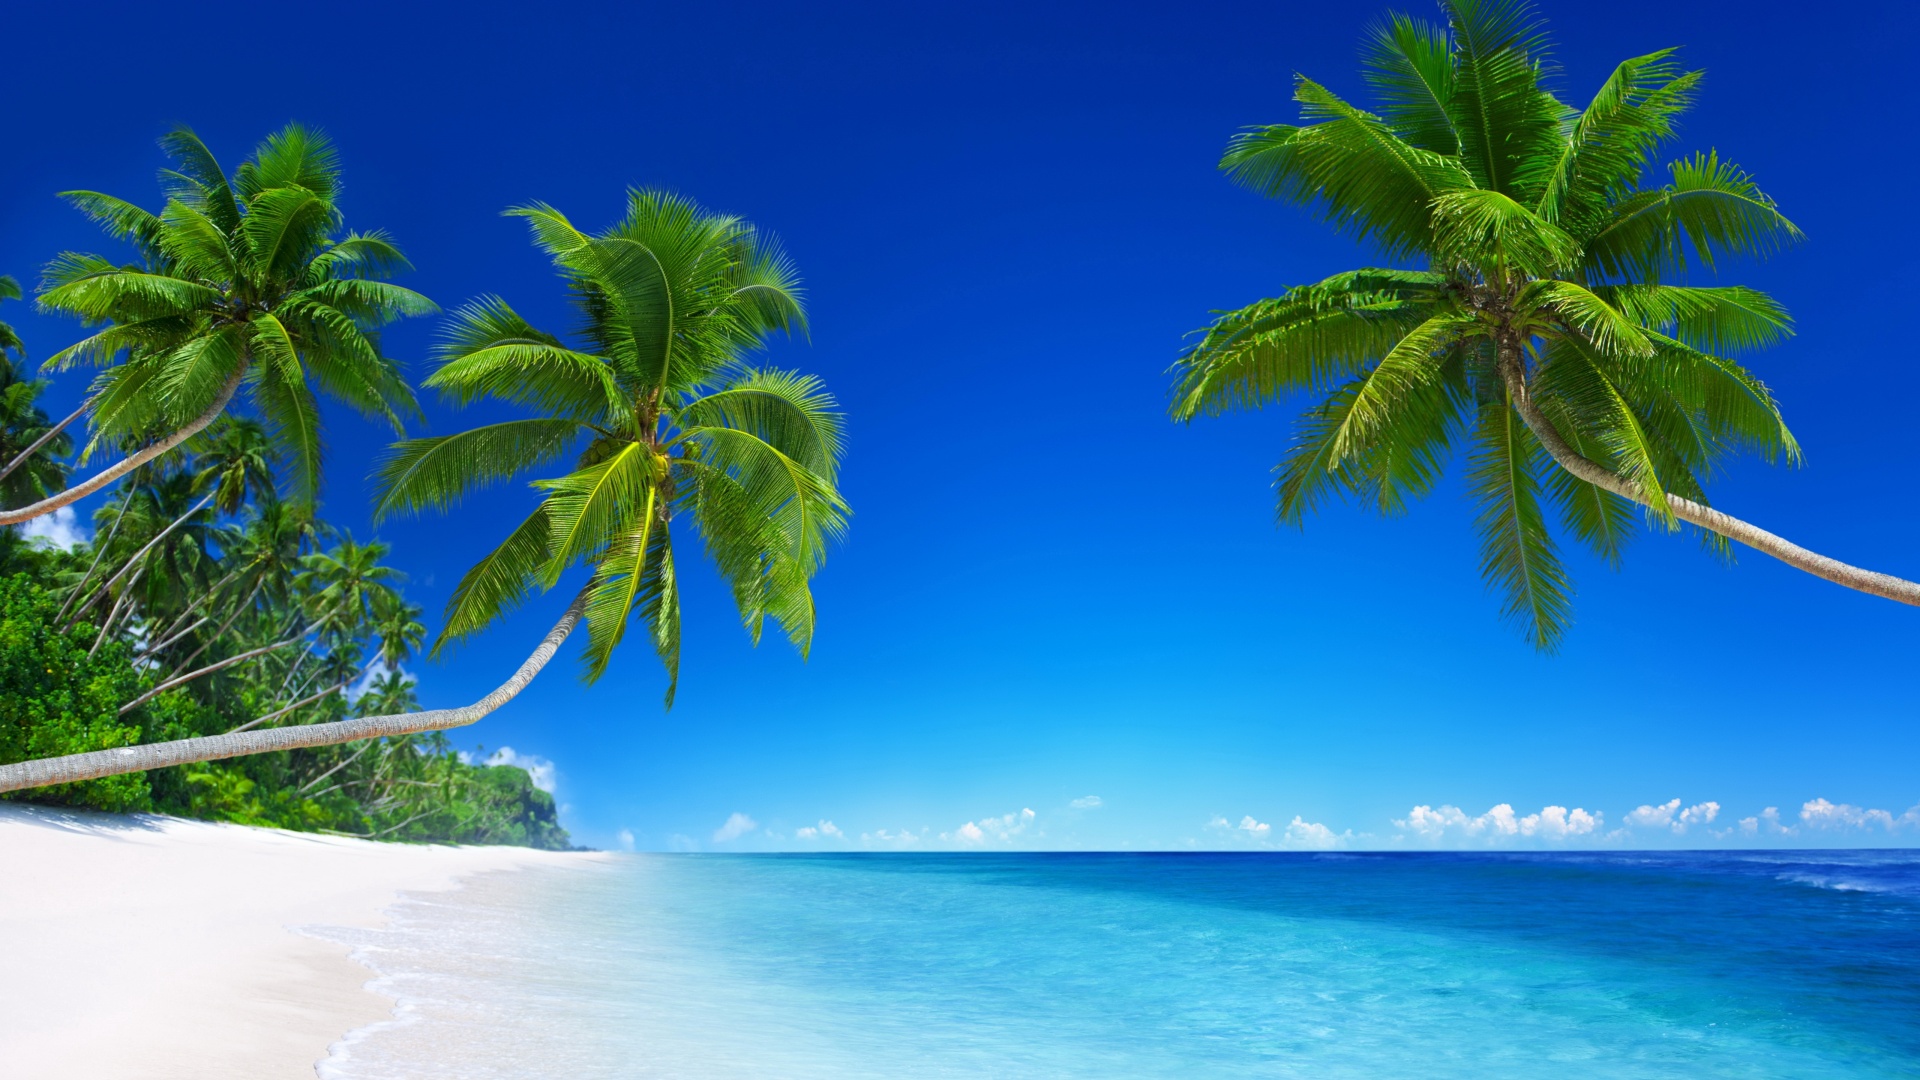 热带海洋,沙滩,沙子,棕榈树图片,蓝色大海天空风景桌面壁纸